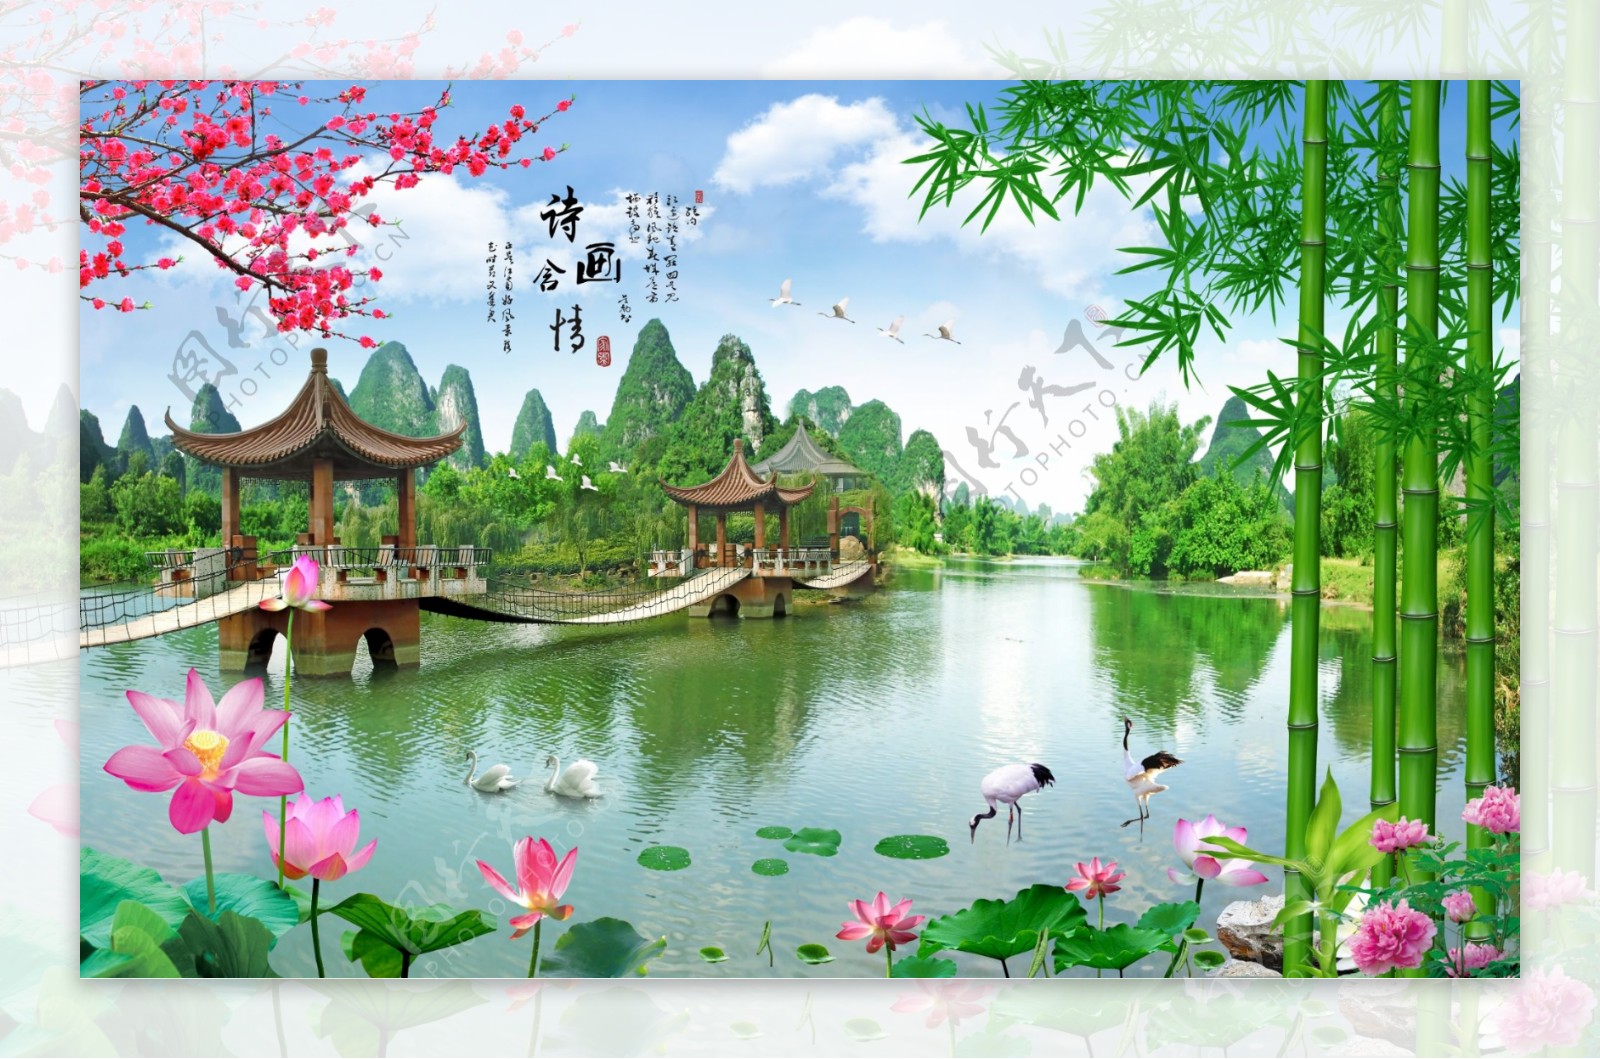 竹枝清新绿色风景湖泊壁画背景墙